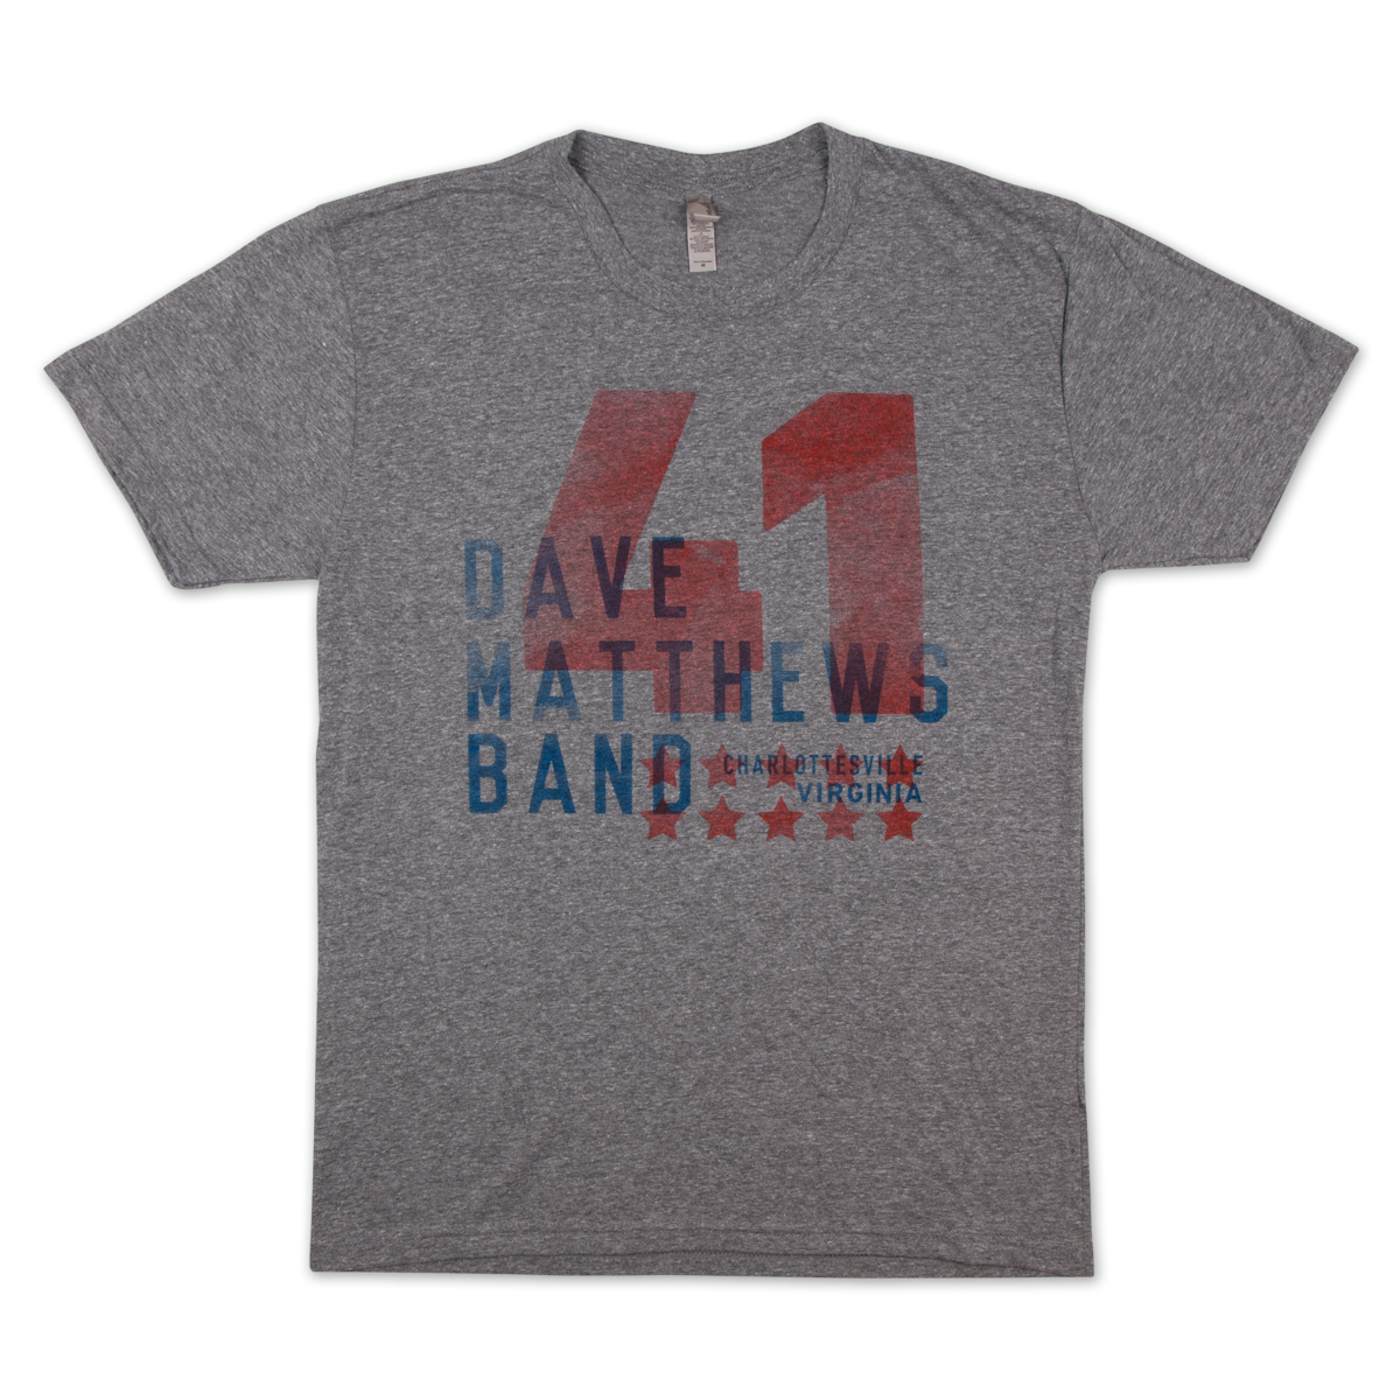 Dave Matthews Band Men's #41 Tee